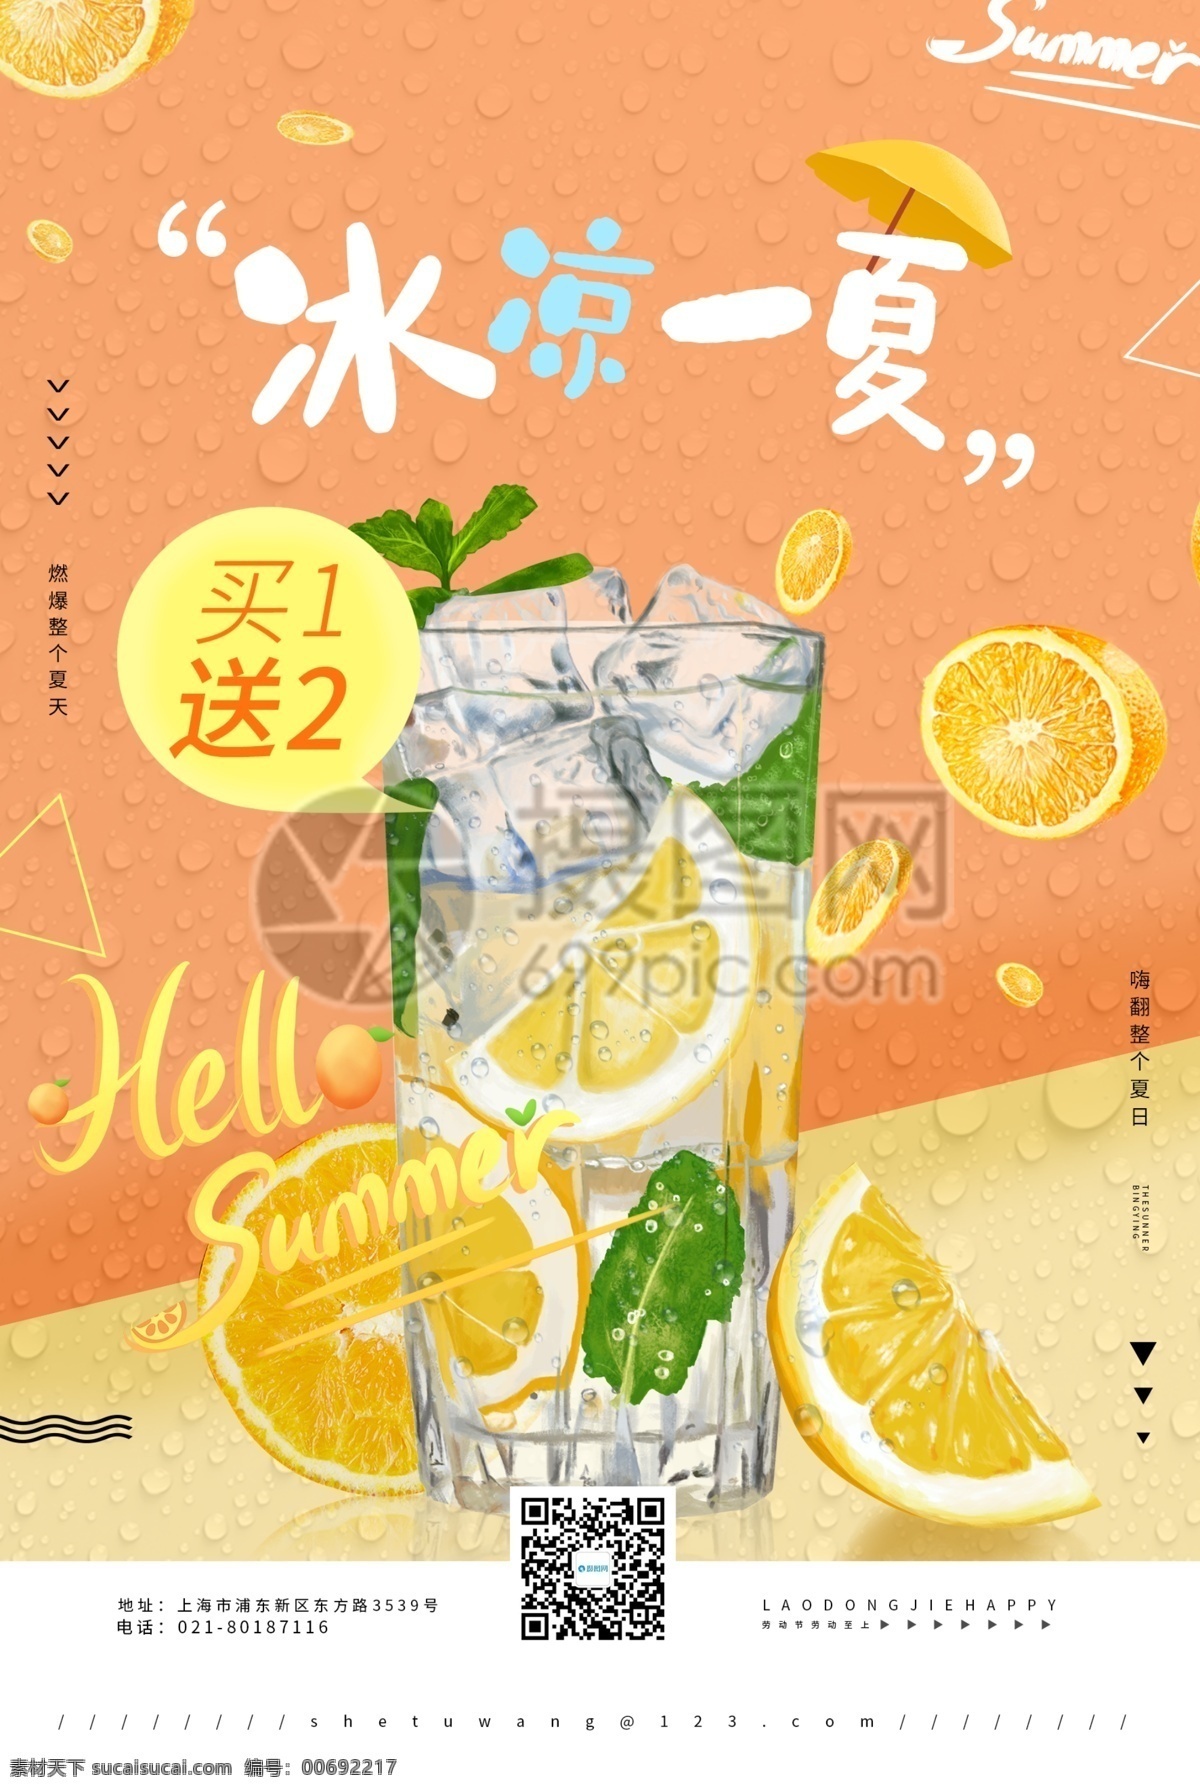 夏日 冰 饮 冰凉 一夏 饮料 促销 海报 冰饮 冰凉一夏 凉爽 橙汁 节日海报